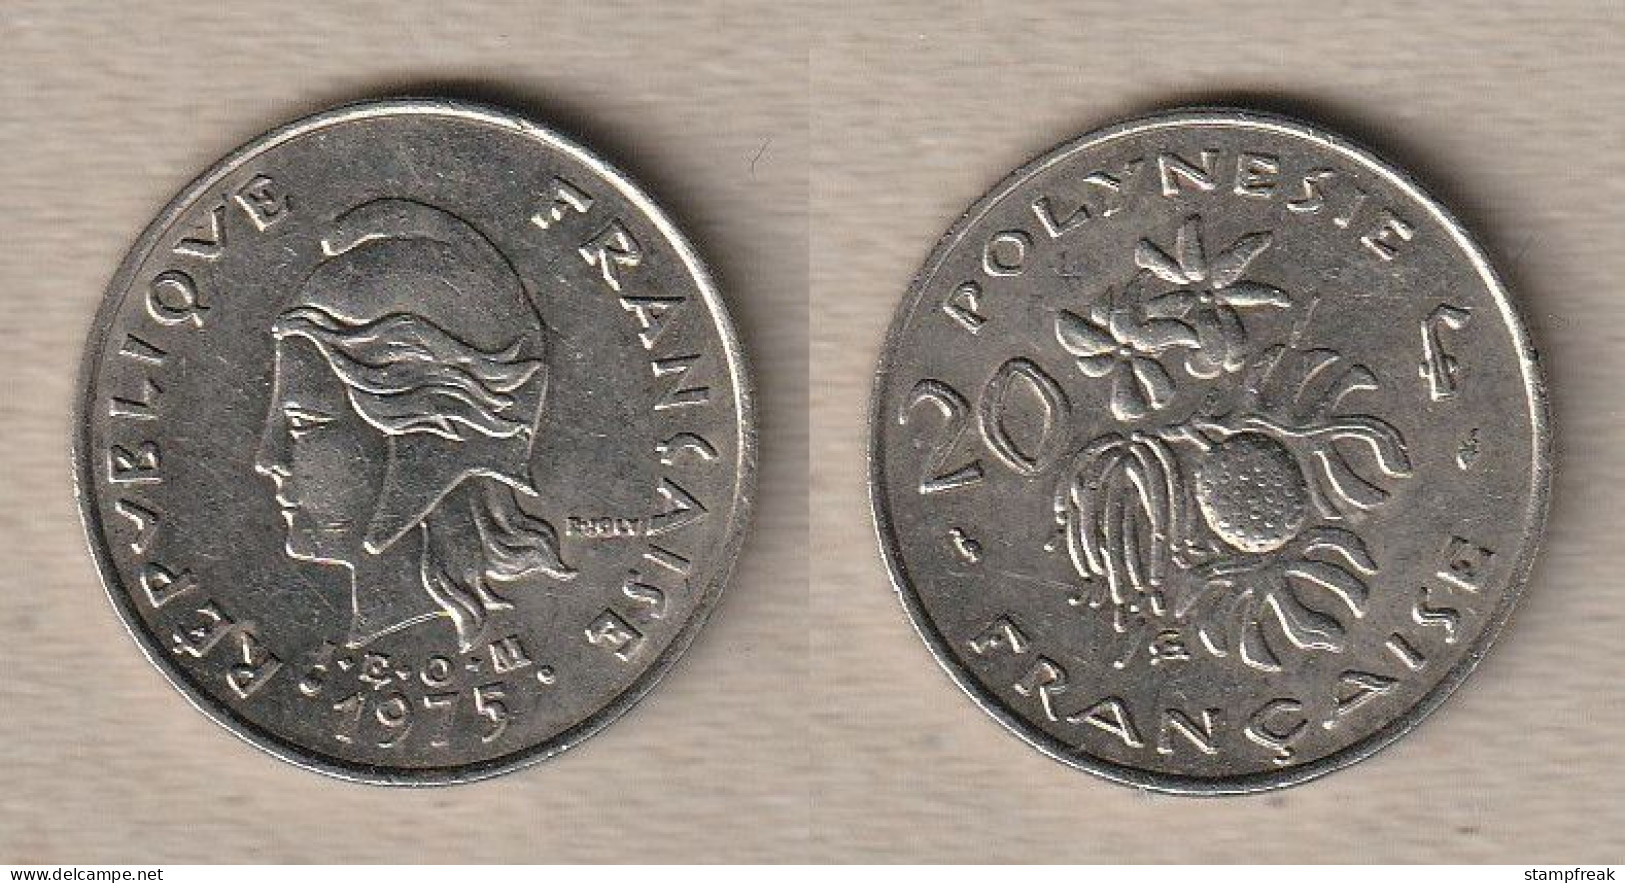 02399) Französisch-Polynesien, 20 Francs 1975 - Französisch-Polynesien